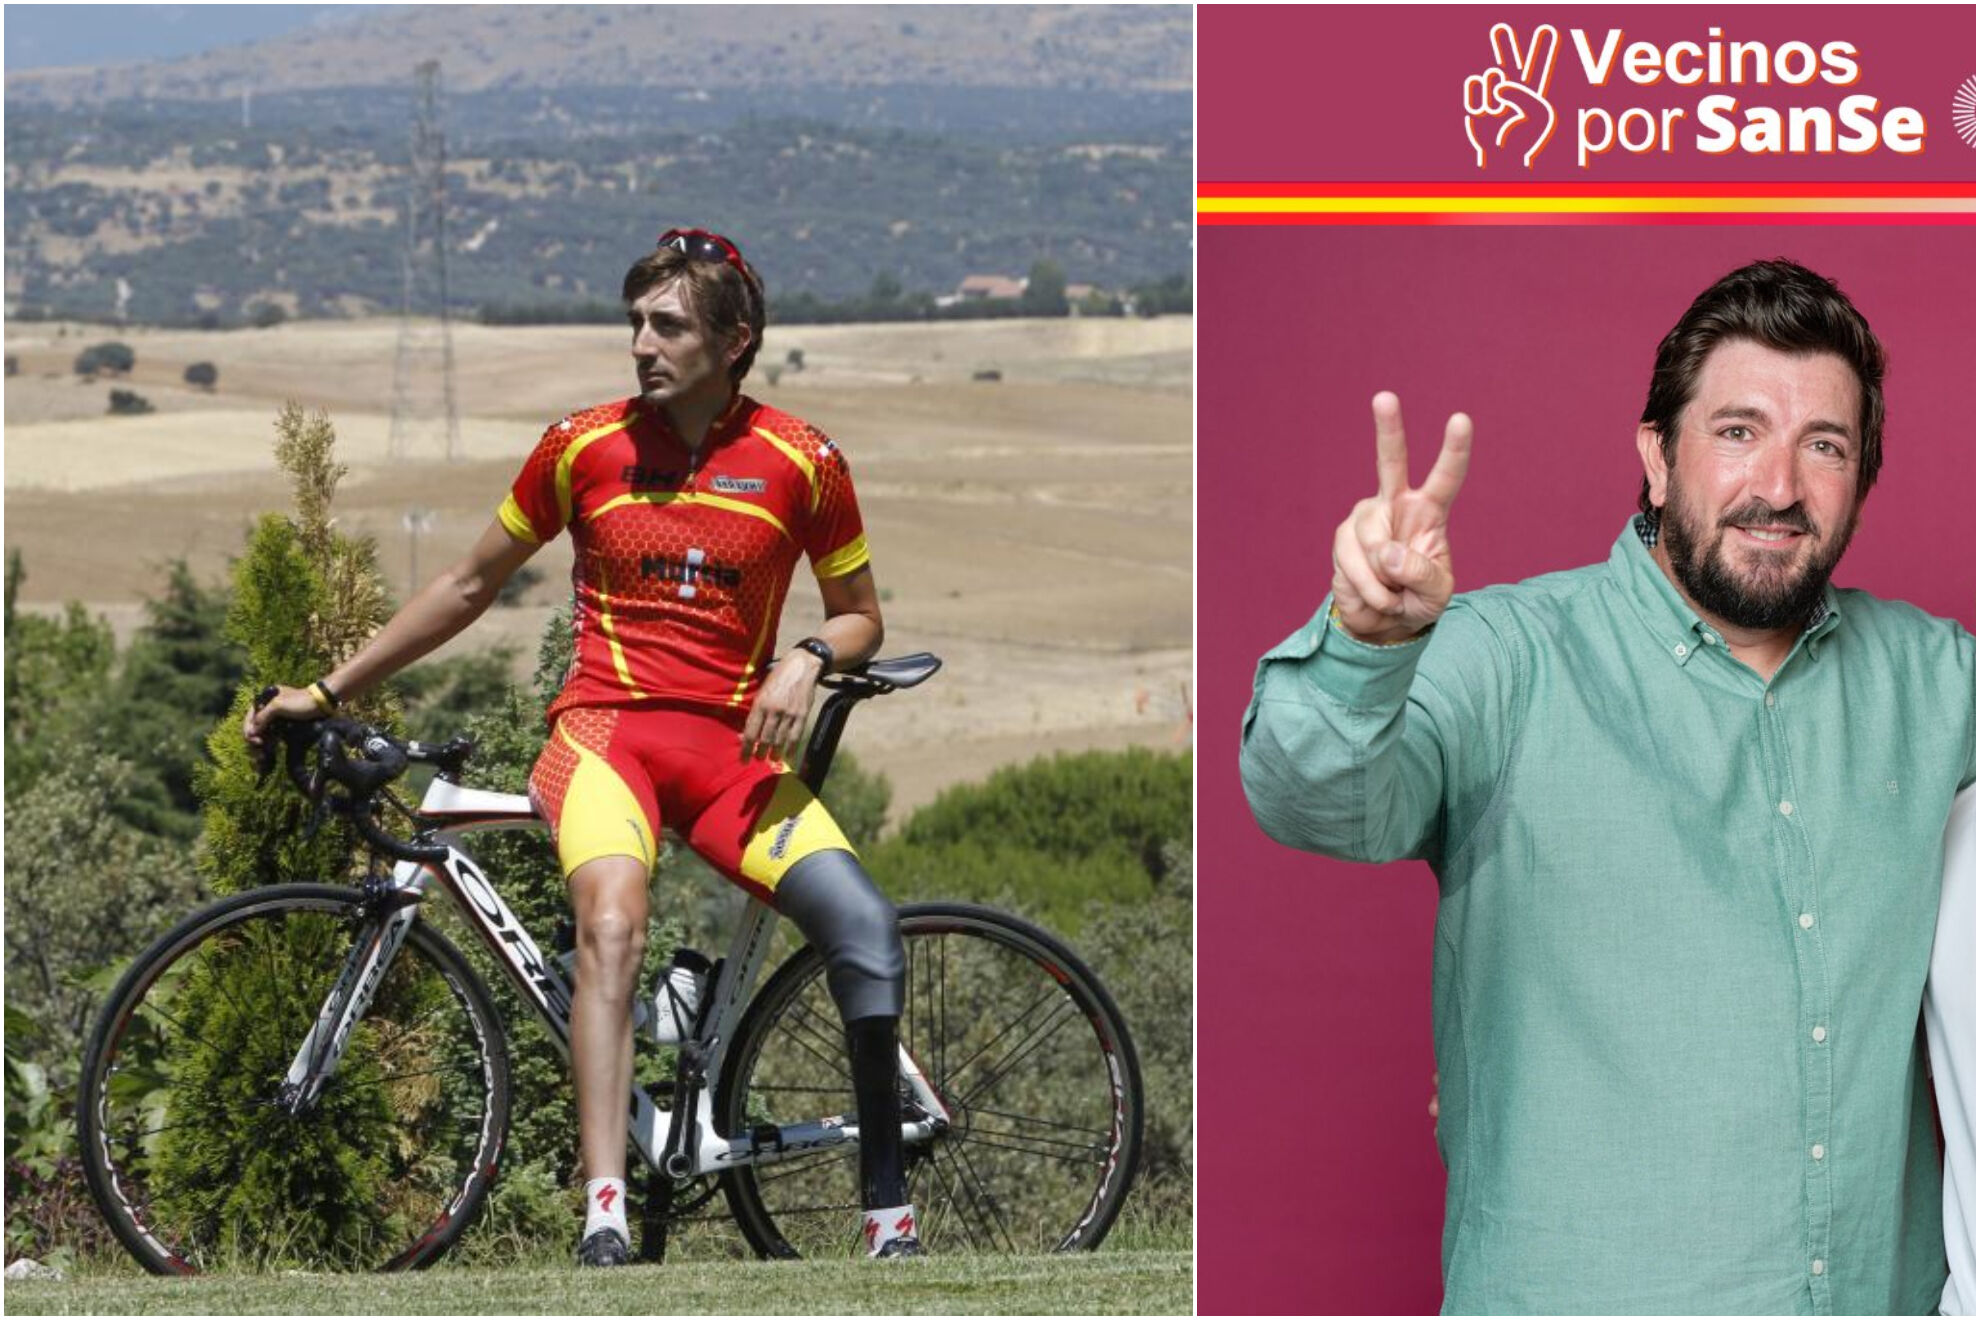 Roberto Alcaide (ciclismo paralímpico), número 24 en la lista de 'Vecinos por Sanse' por San Sebastián de los Reyes